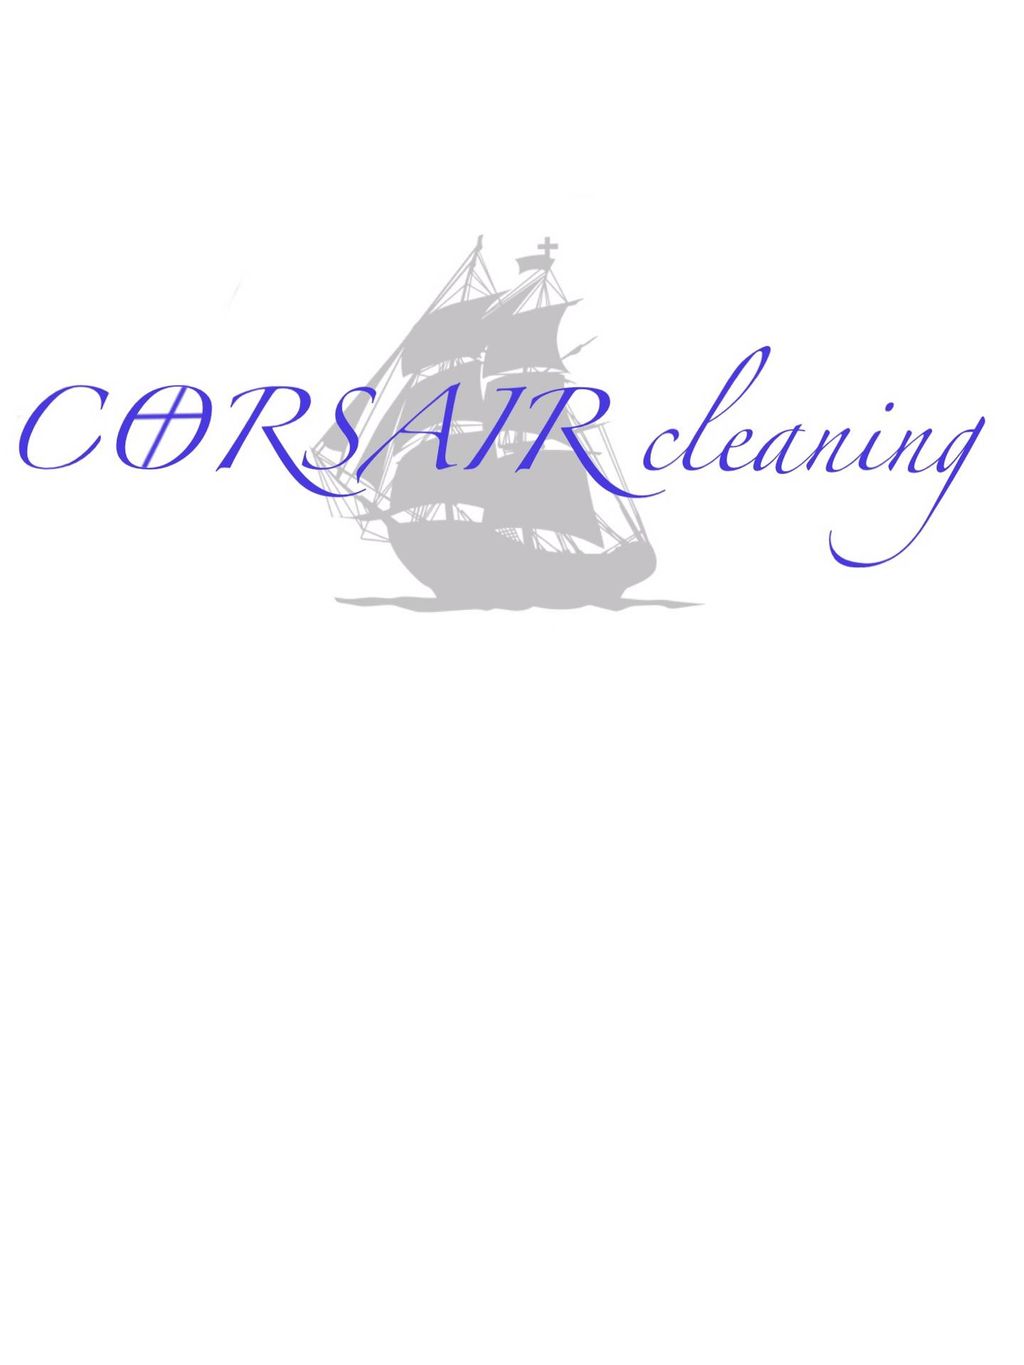 Corsair Cleaning LLC